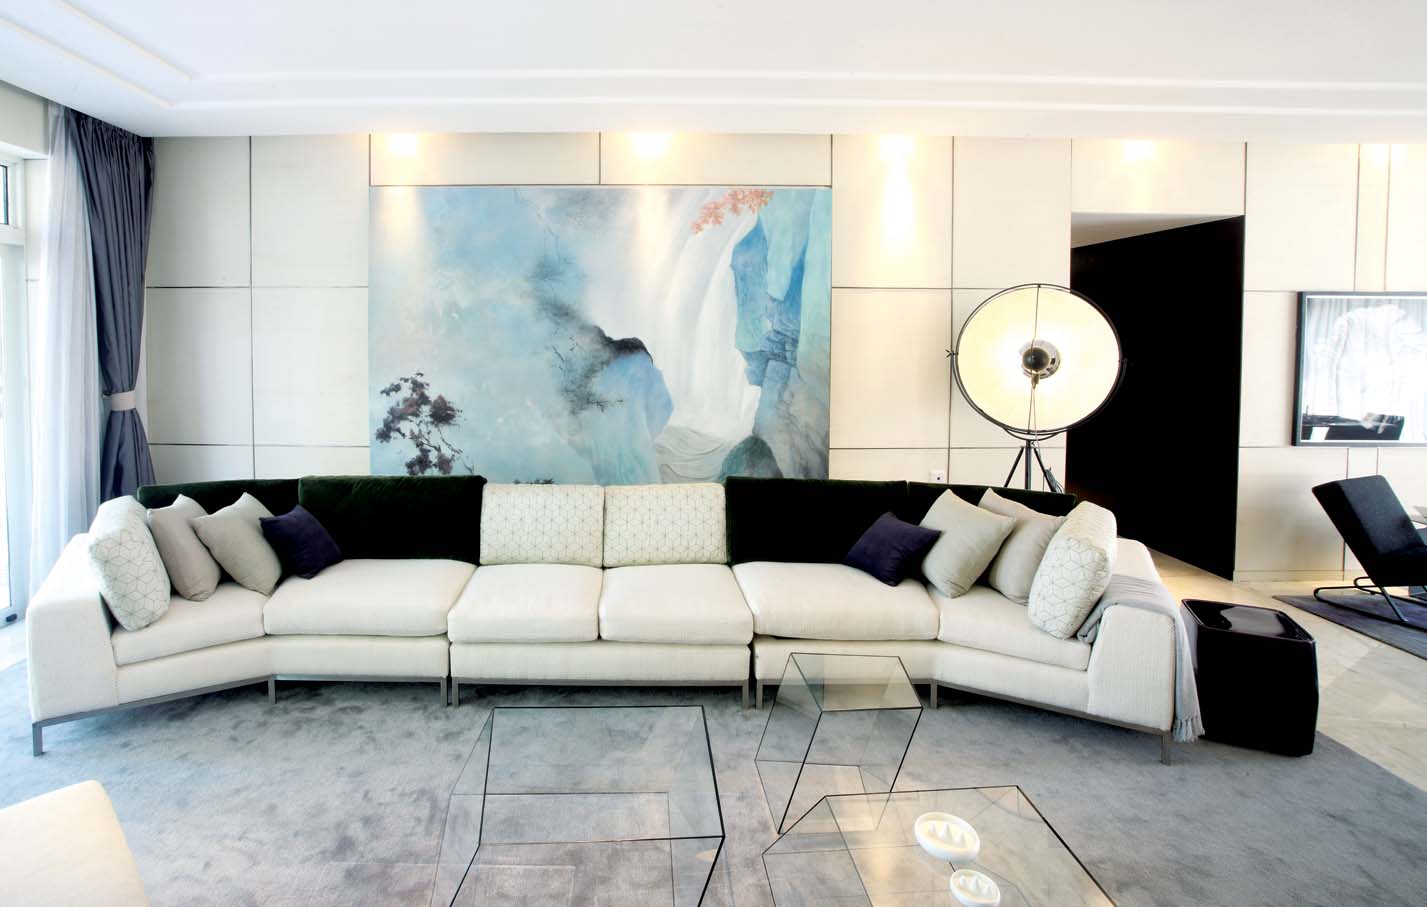 现代客厅沙发背景墙效果图